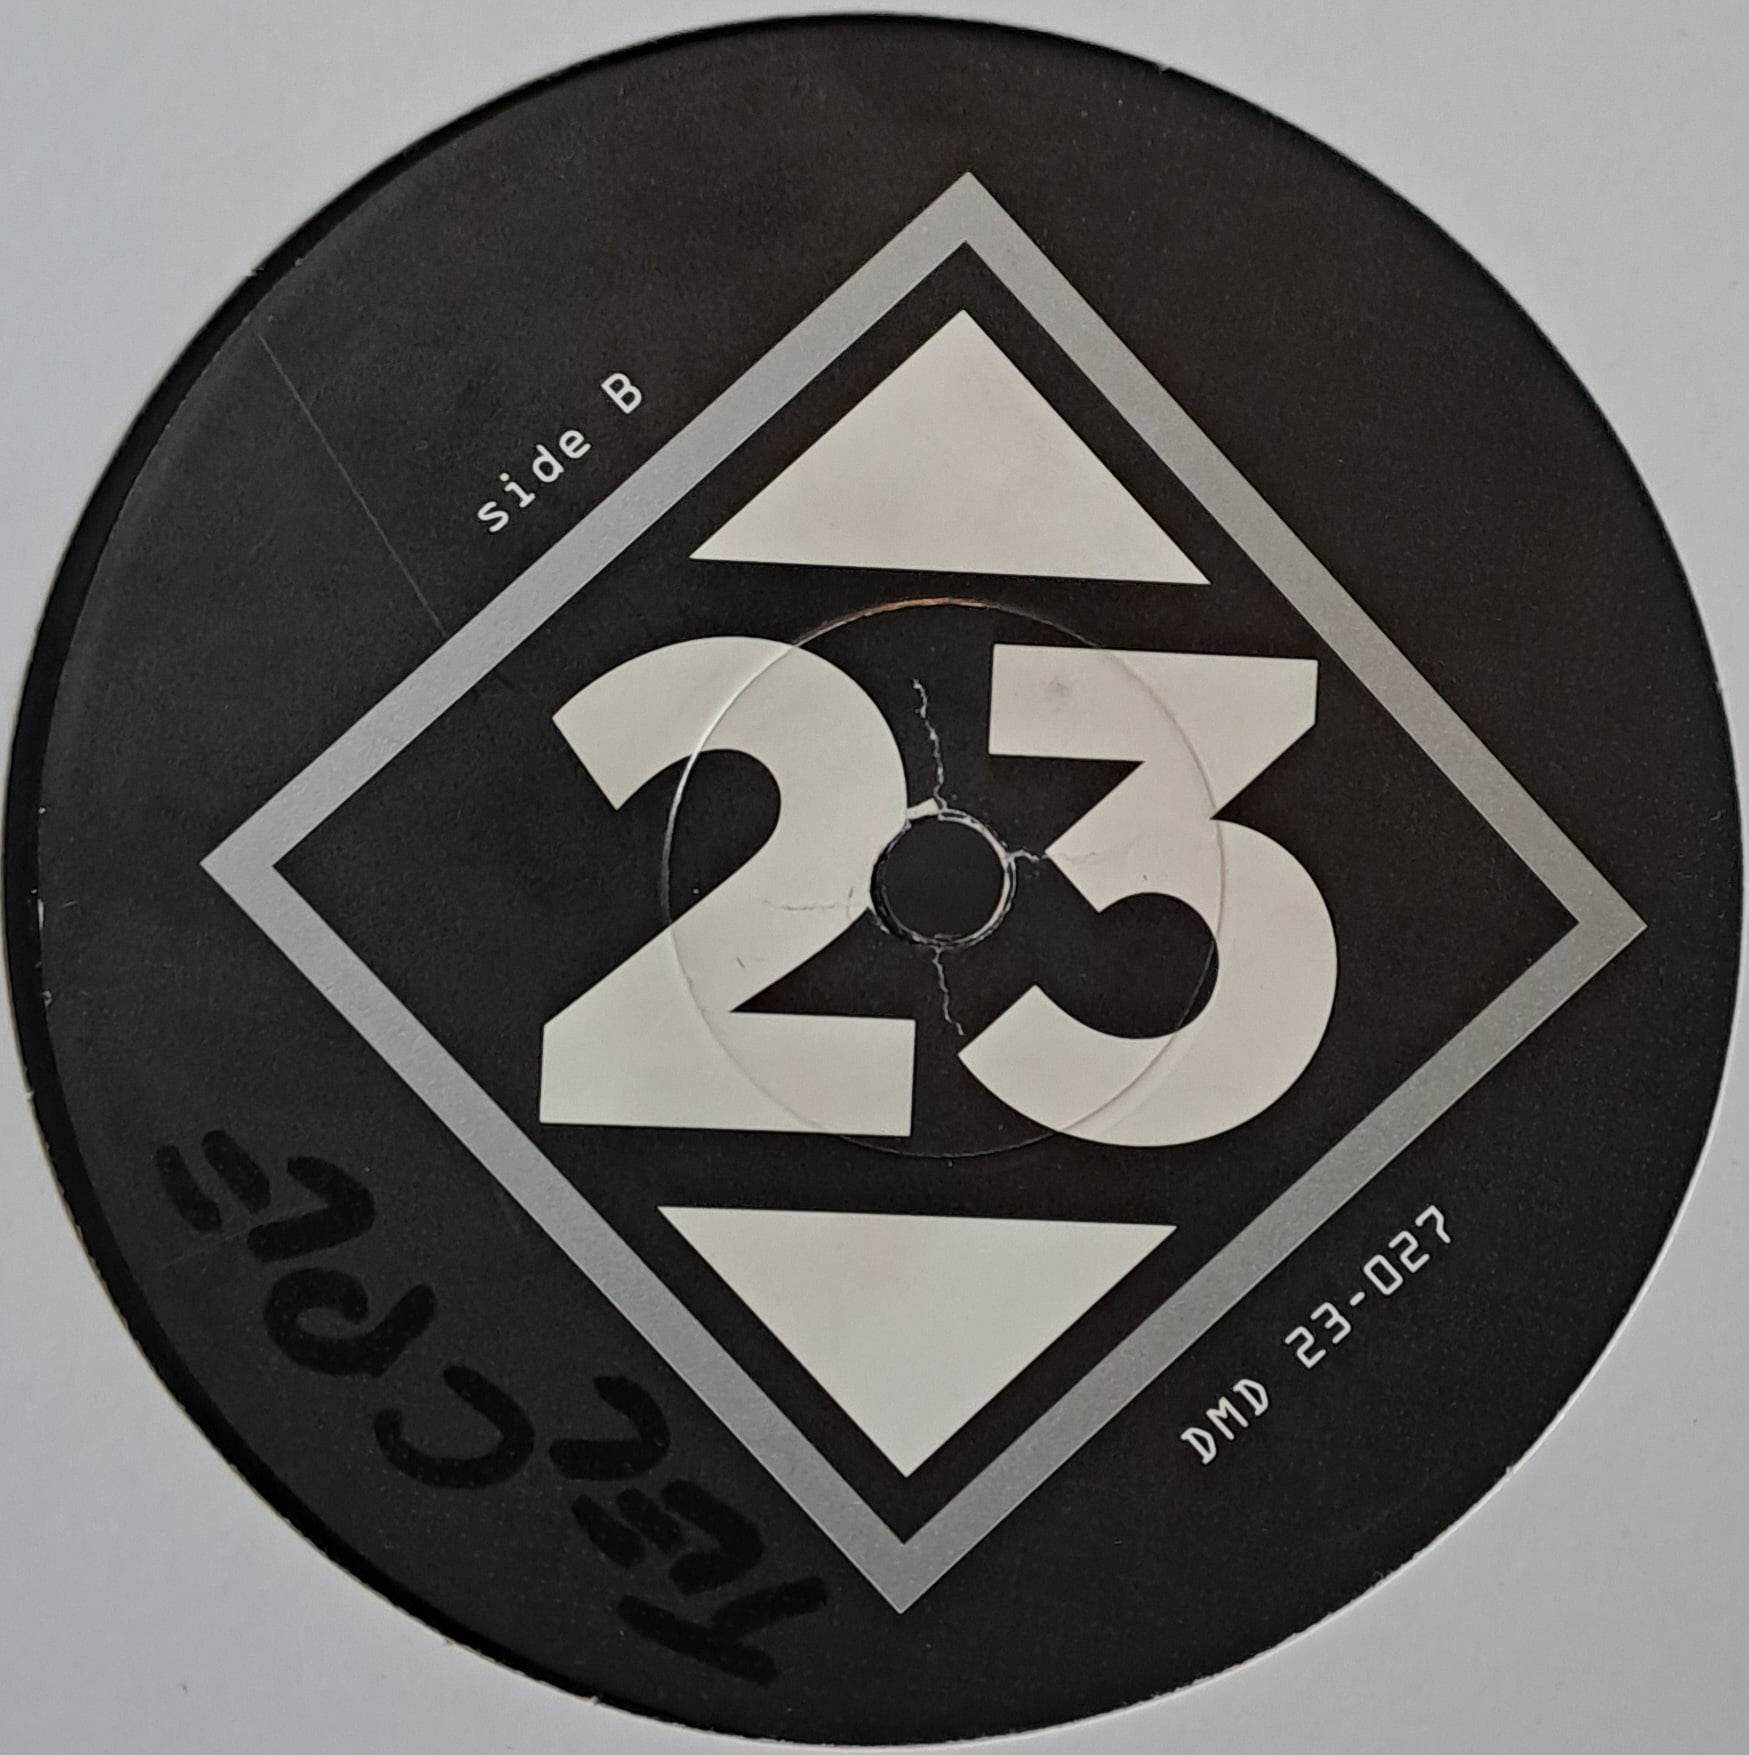 23 Frankfurt ‎027 - vinyle acid